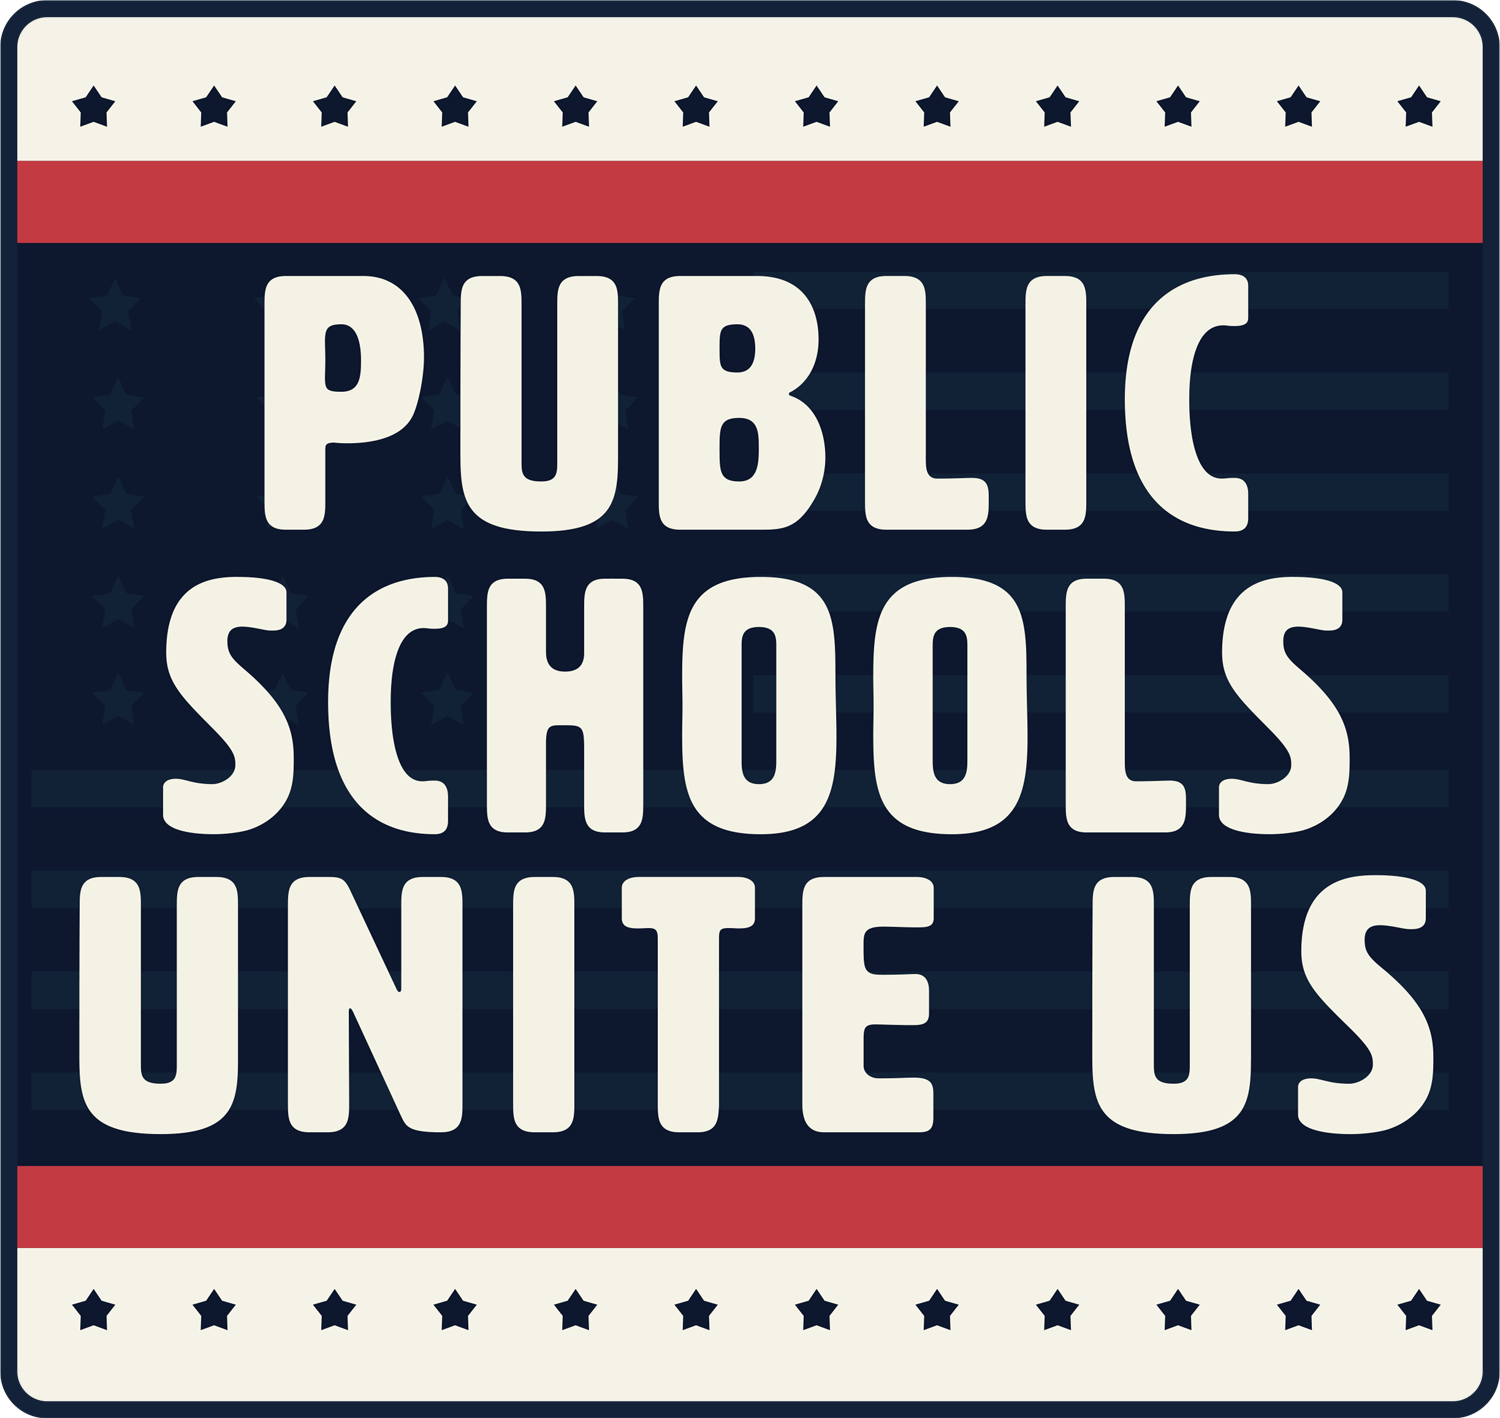 Public Schools Unite Us graphic box